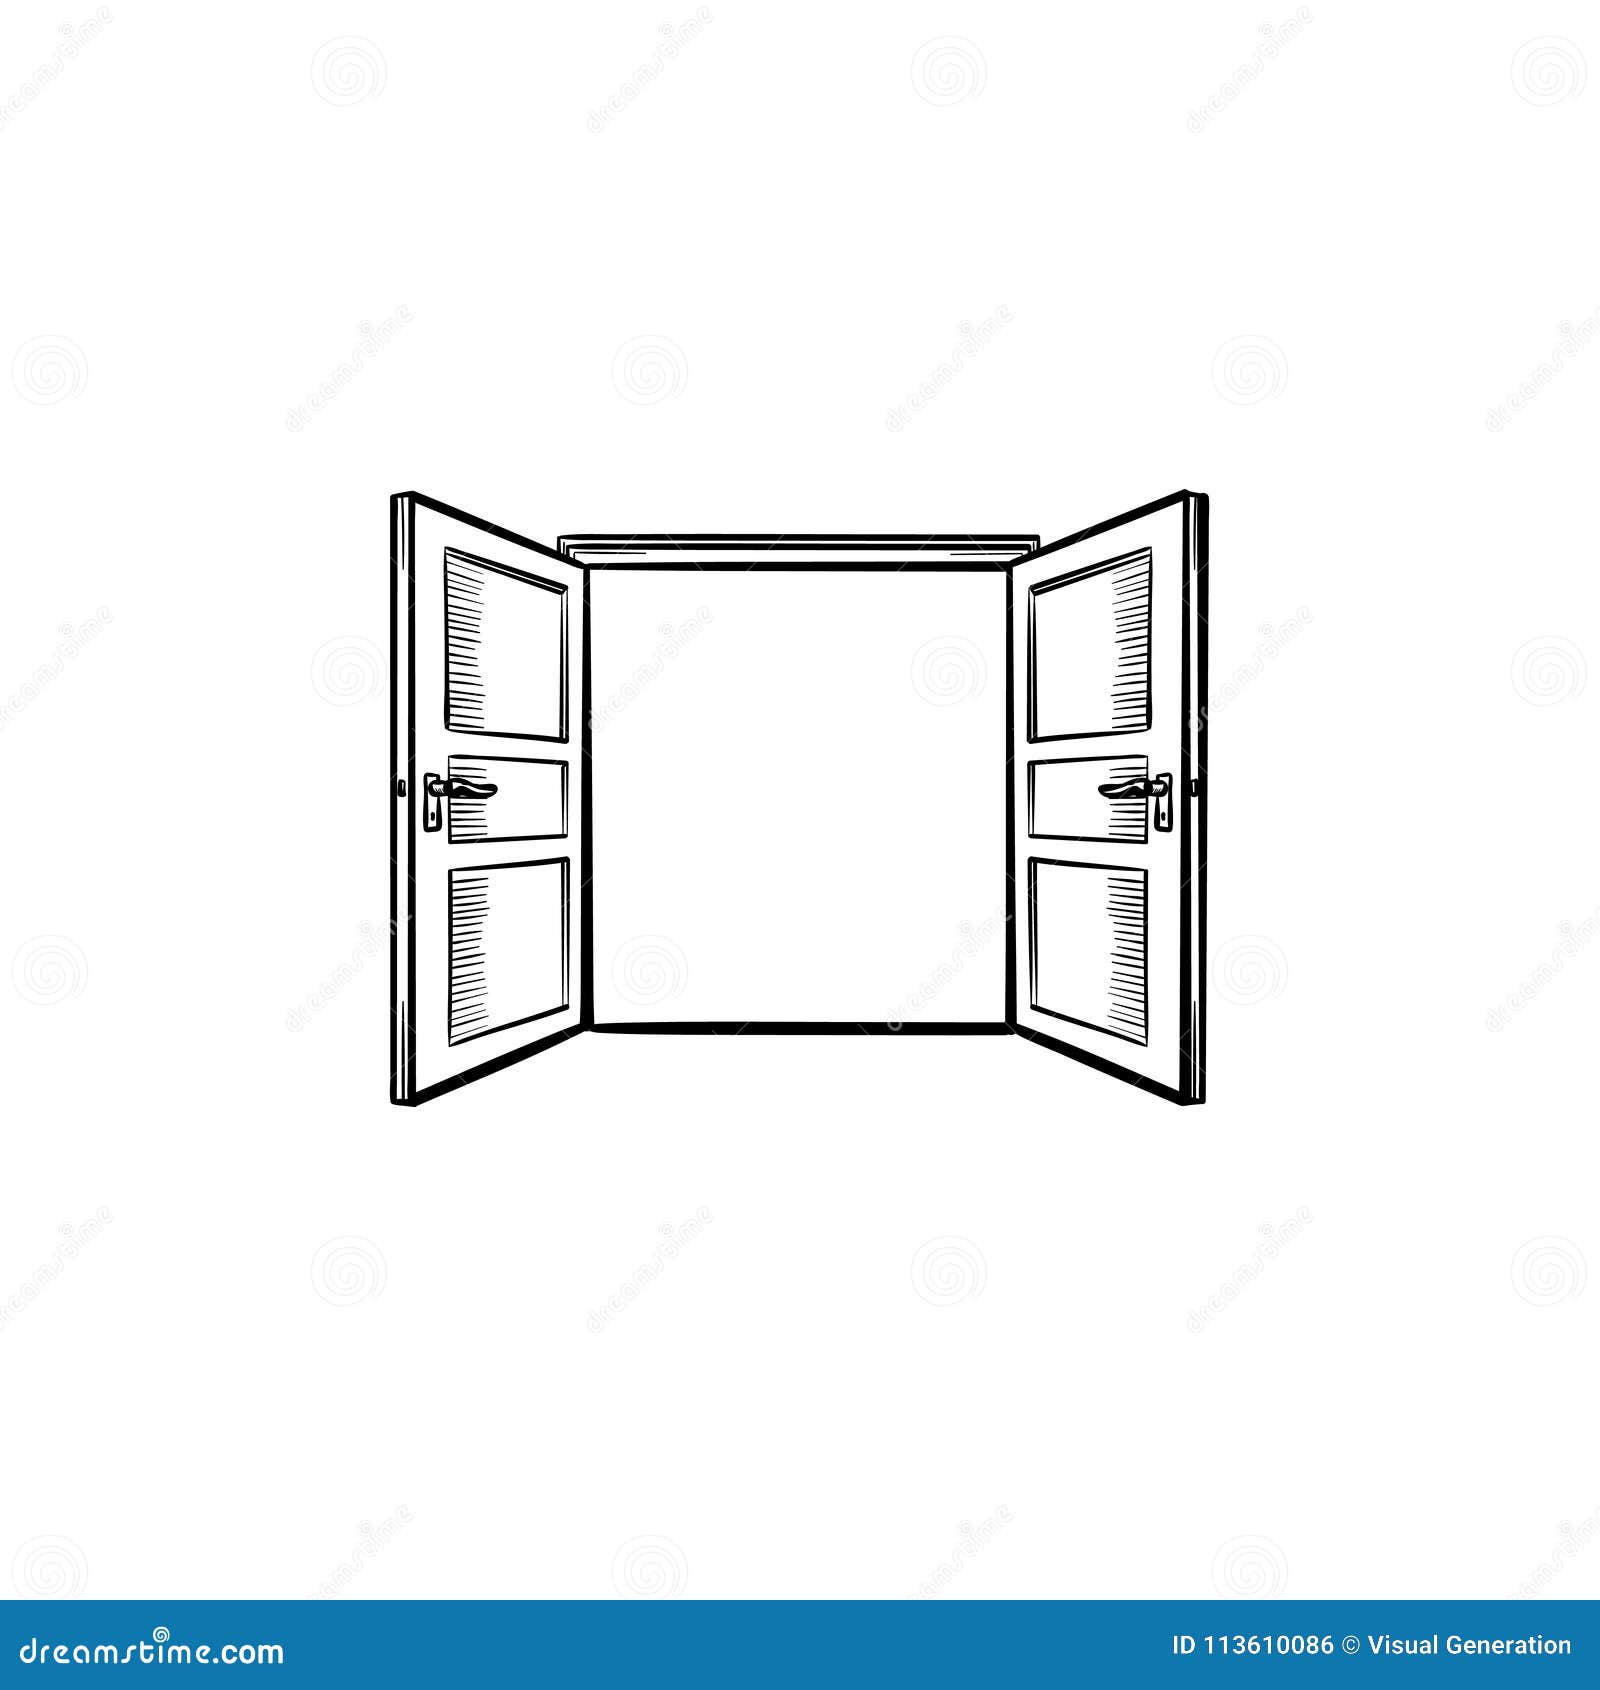 Door Opening Hand Drawn Sketch Icon Stock Vector Illustration Of Doorway Drawing